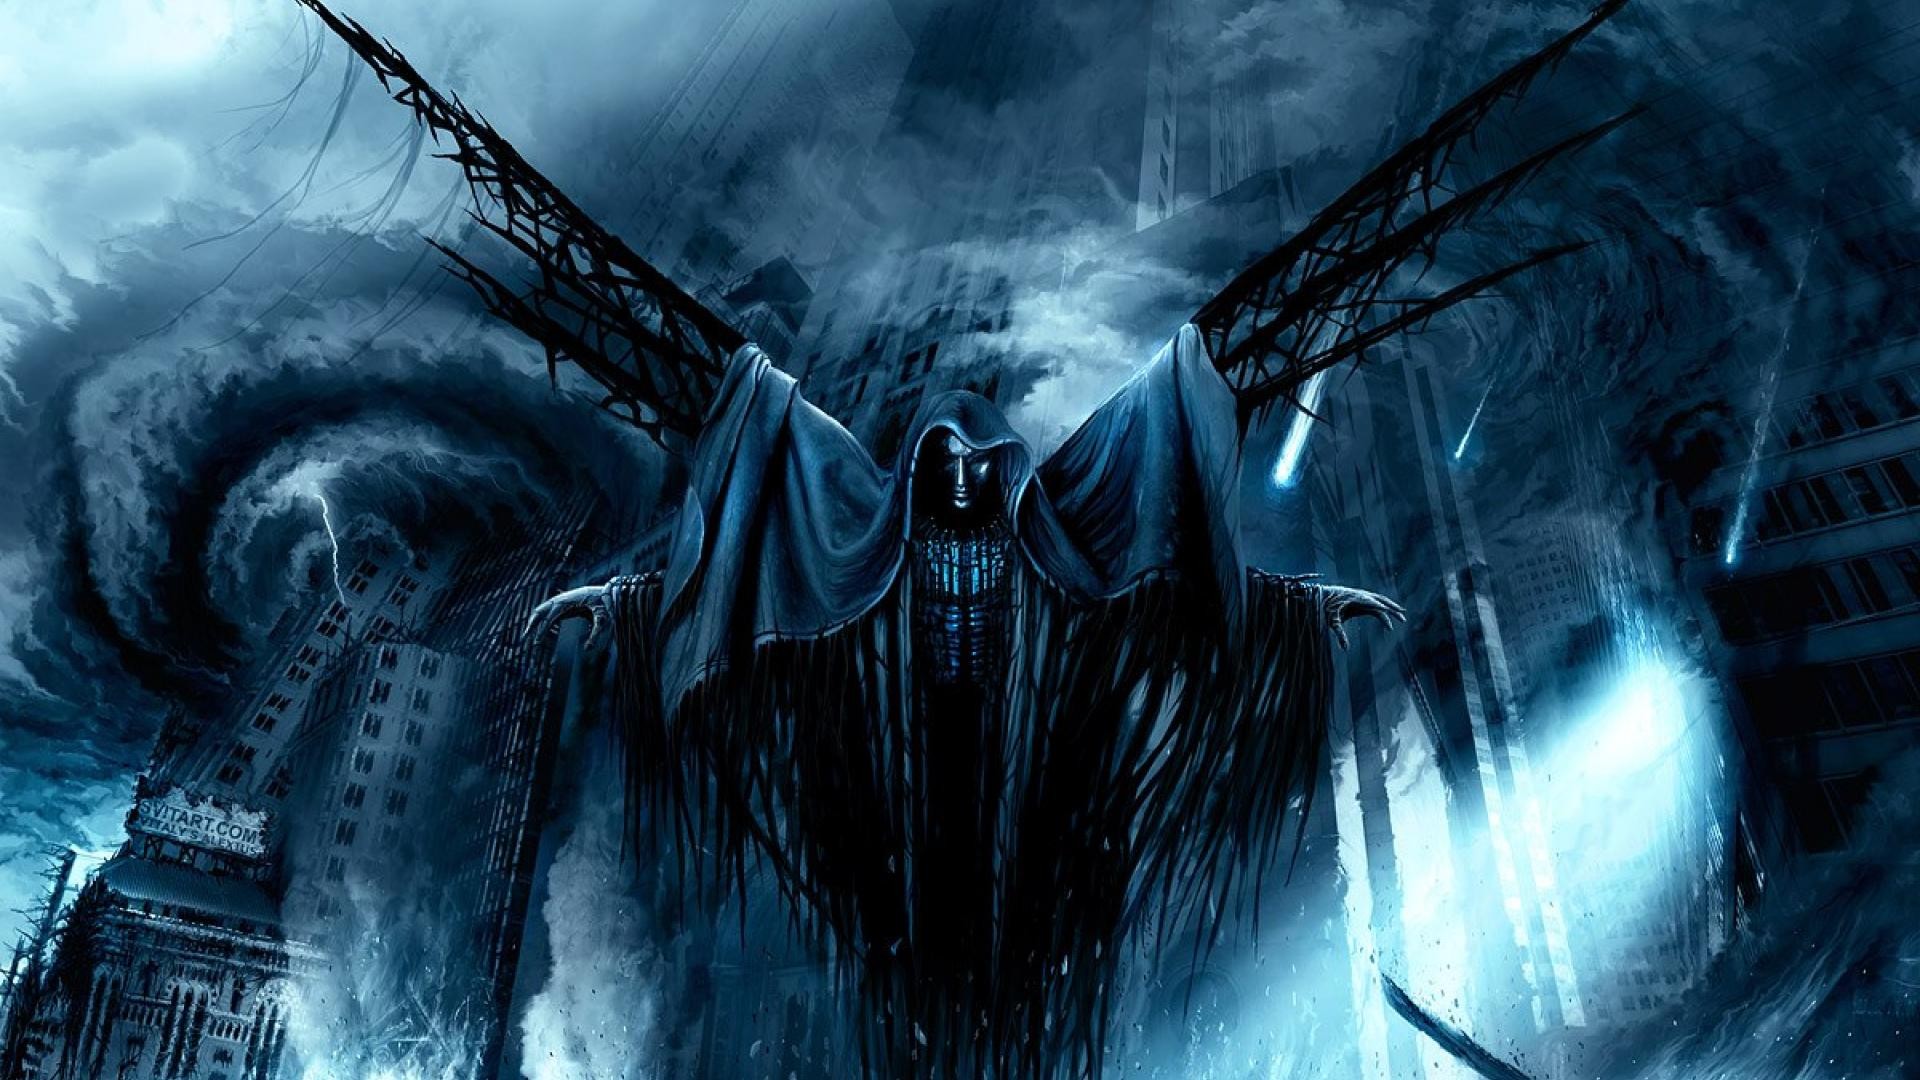 General 1920x1080 creepy horror fantasy art dark cyan storm blue death city